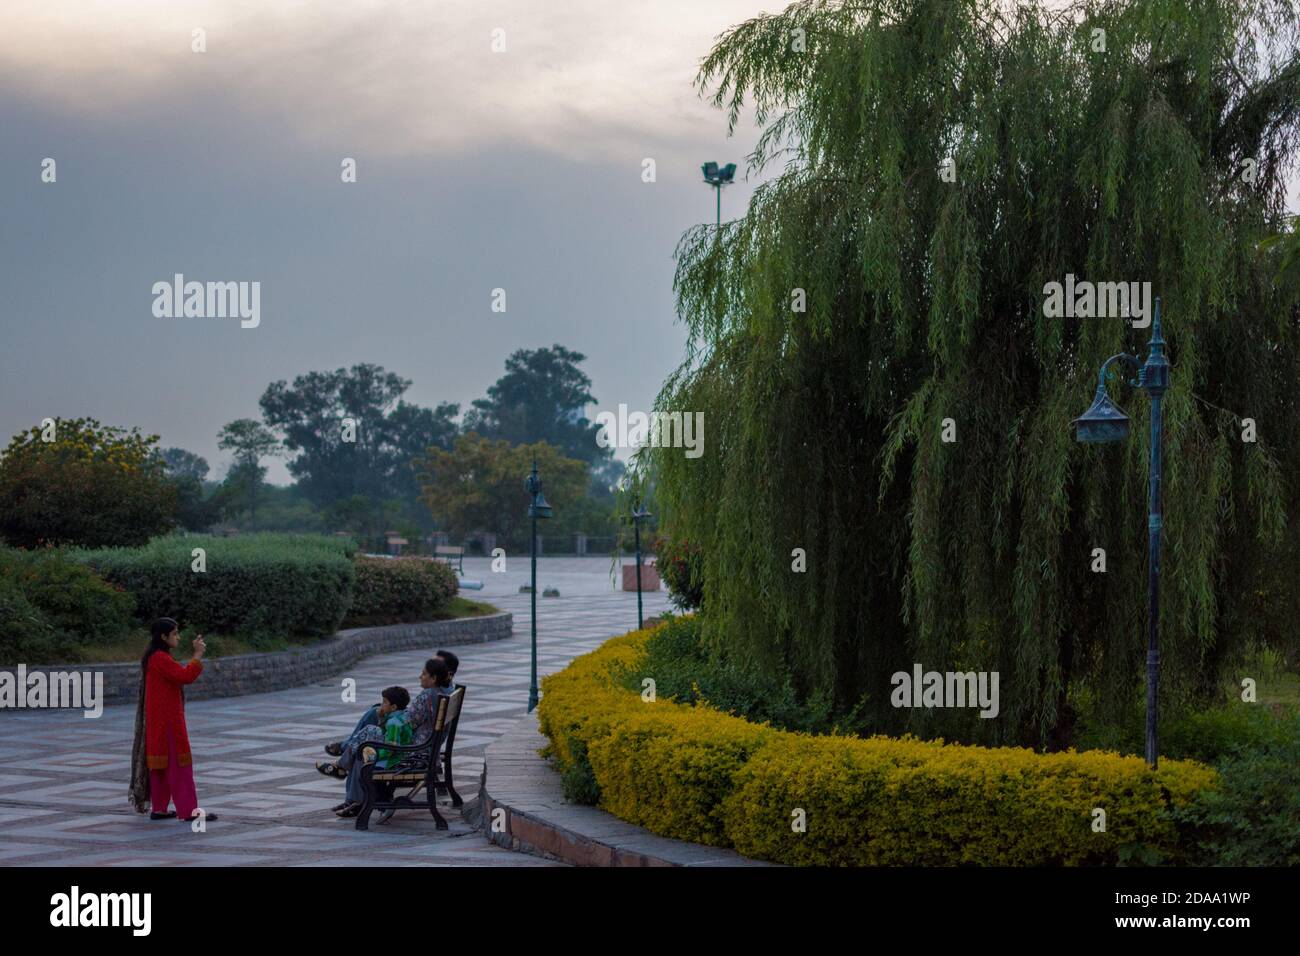 Islamabad / Pakistan - 2 novembre 2015 : une famille prend des photos dans le parc Lake View à côté du lac Rawal. Banque D'Images